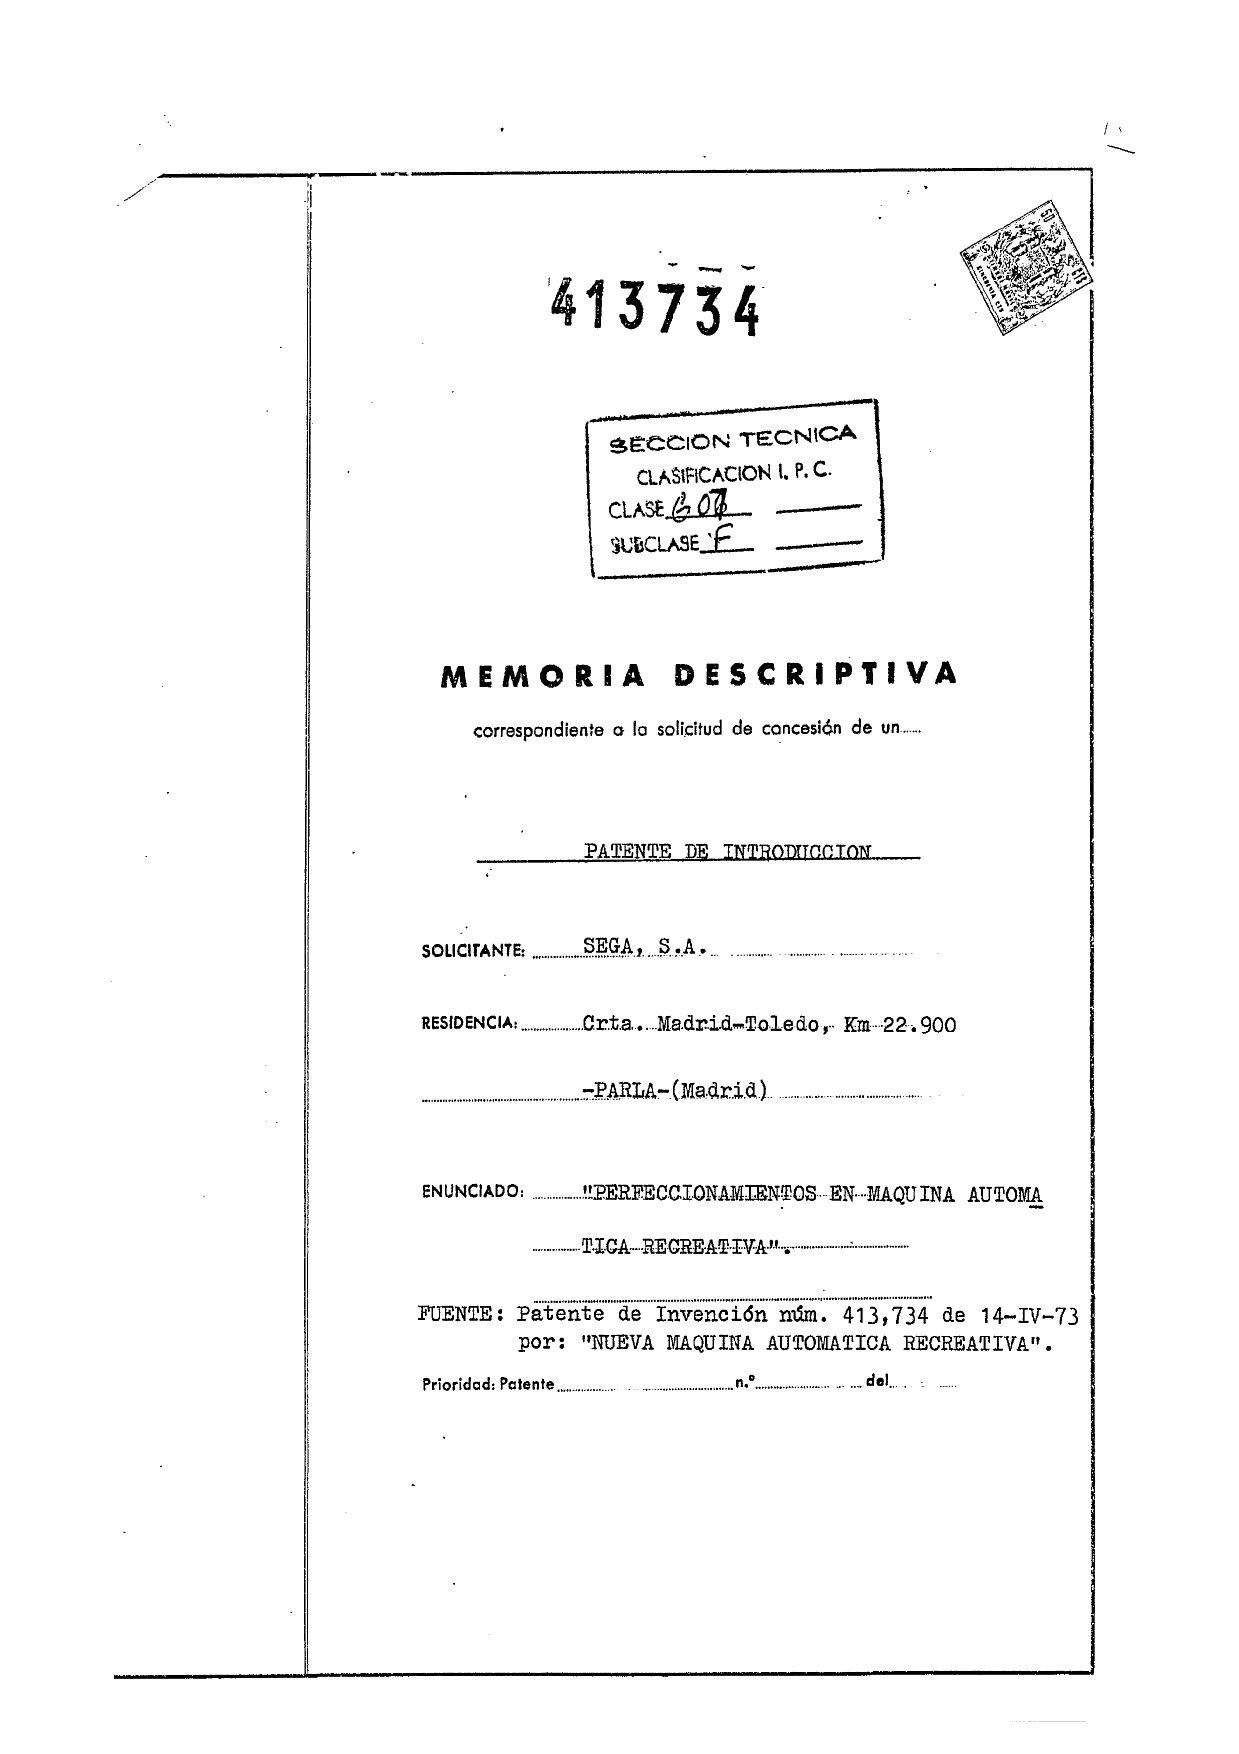 Página de la patente 413734 de Segasa. Imagen: Martín f. Martorell.